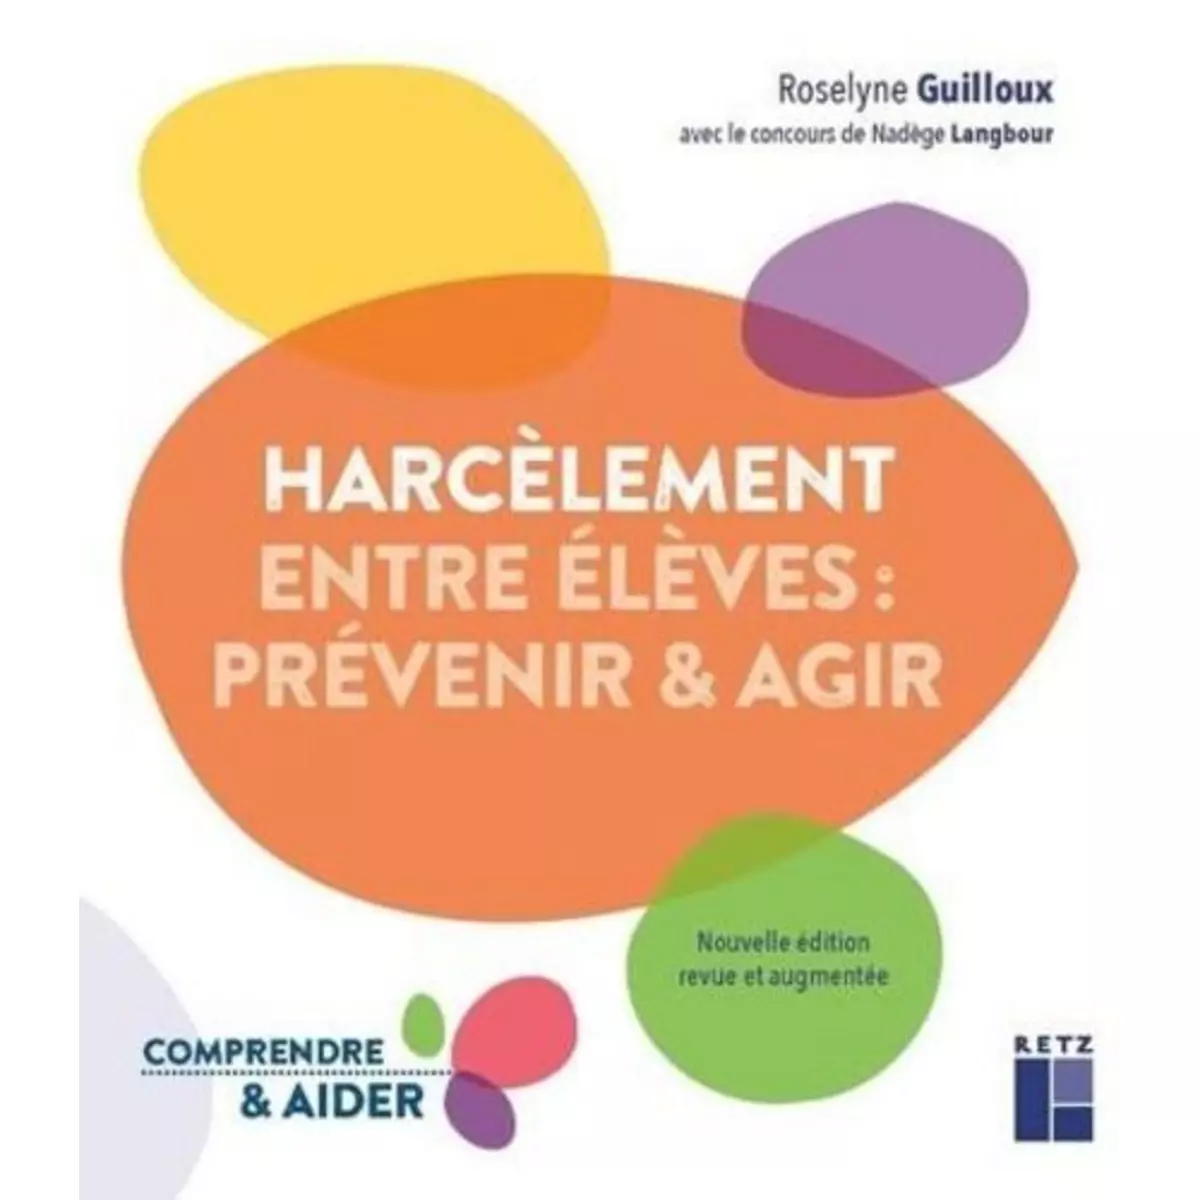  LE HARCELEMENT ENTRE ELEVES : PREVENIR & AGIR. EDITION REVUE ET AUGMENTEE, Guilloux Roselyne